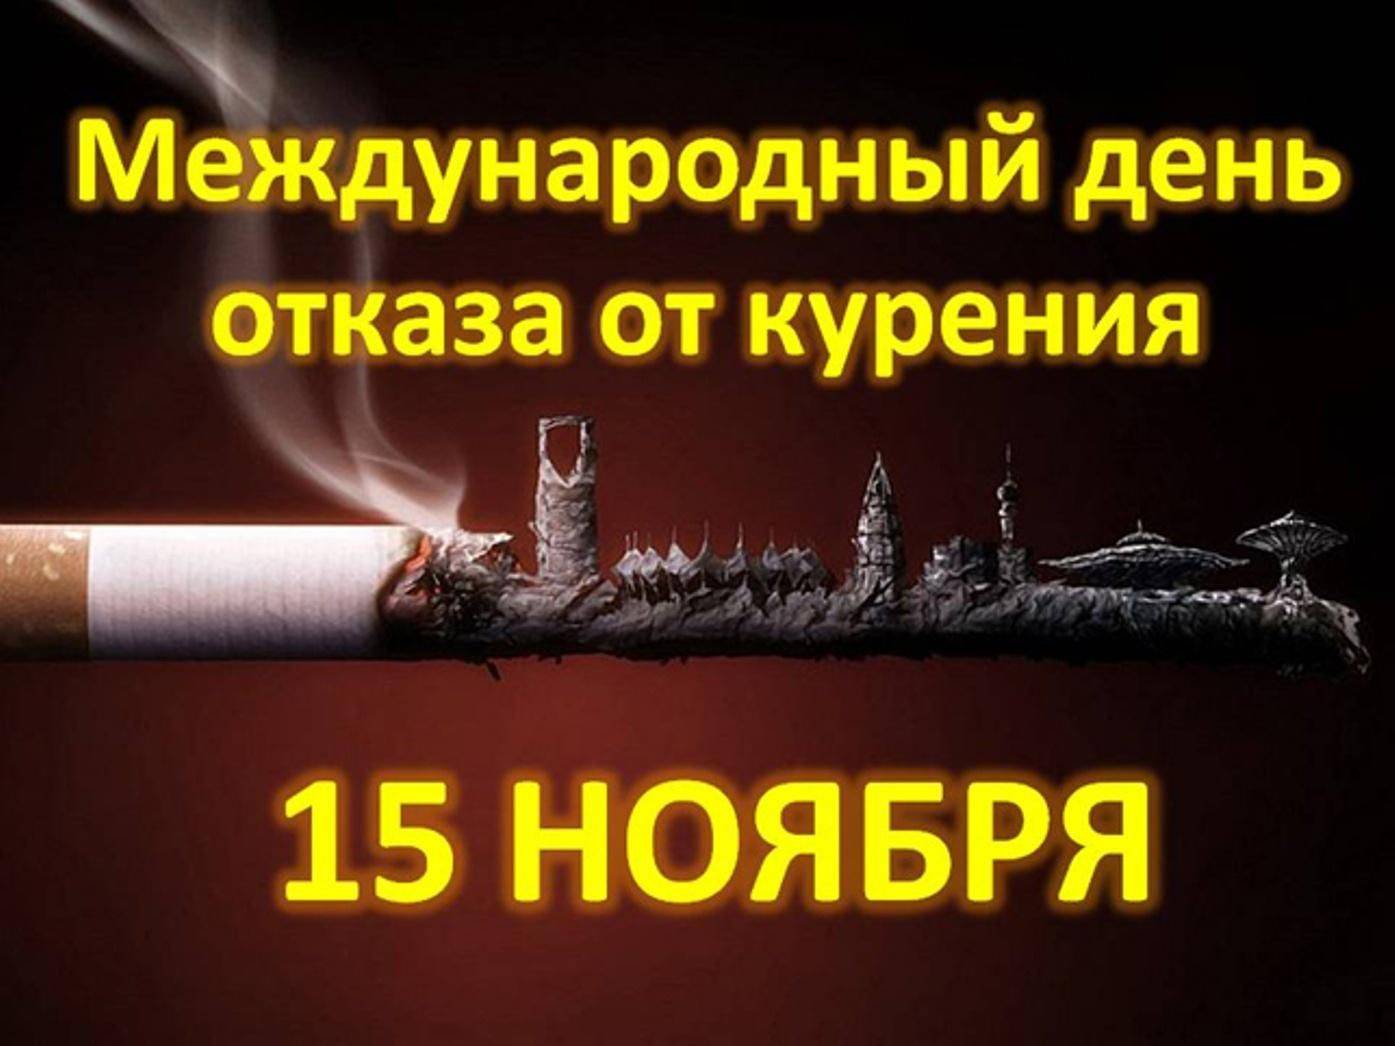 Международный день отказа от курения: дата проведения, история